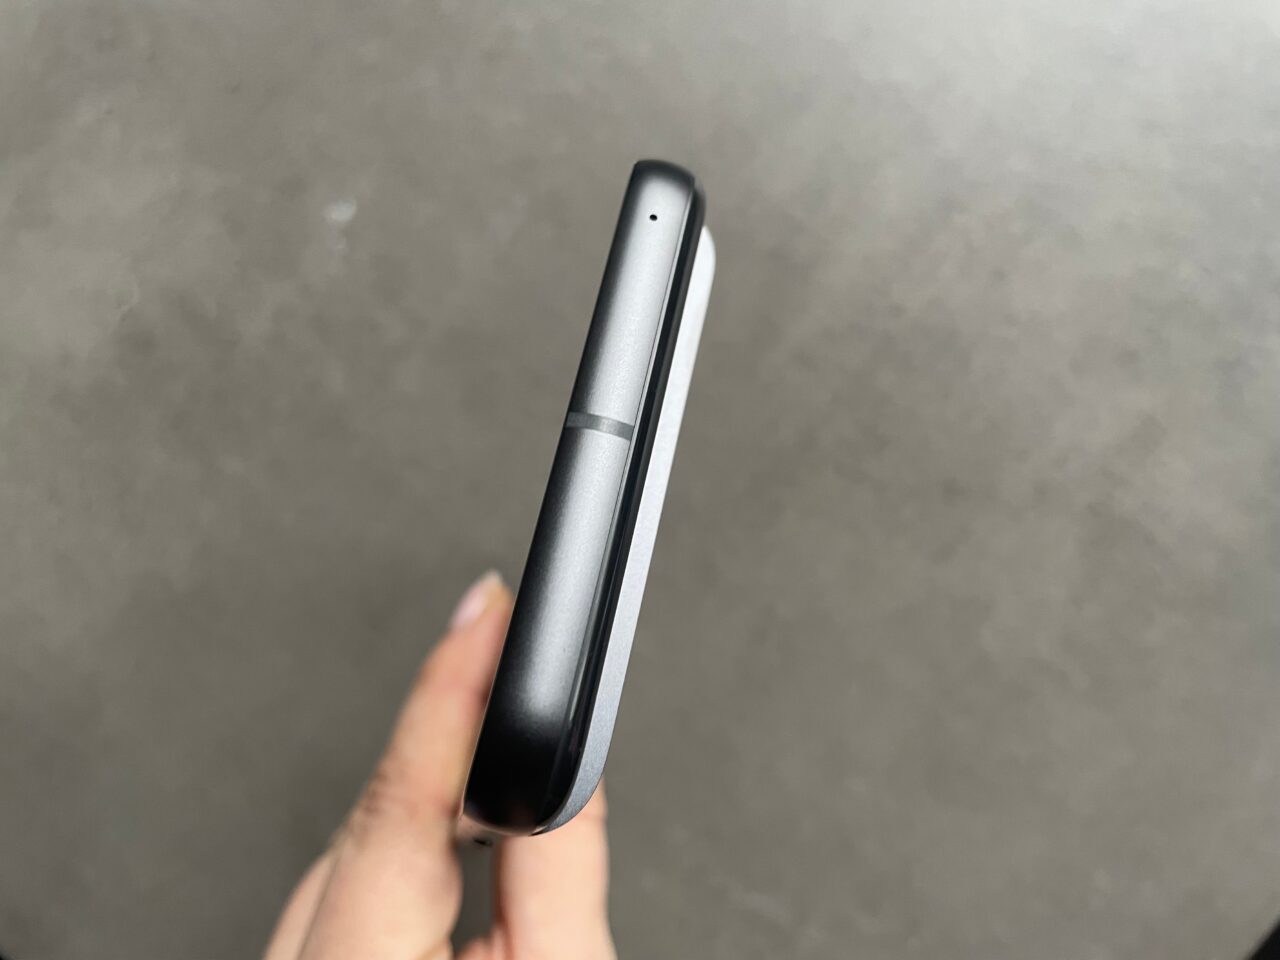 Czarny smartfon trzymany w dłoni na szarym tle, widok boczny ukazujący krawędź i część ekranu.